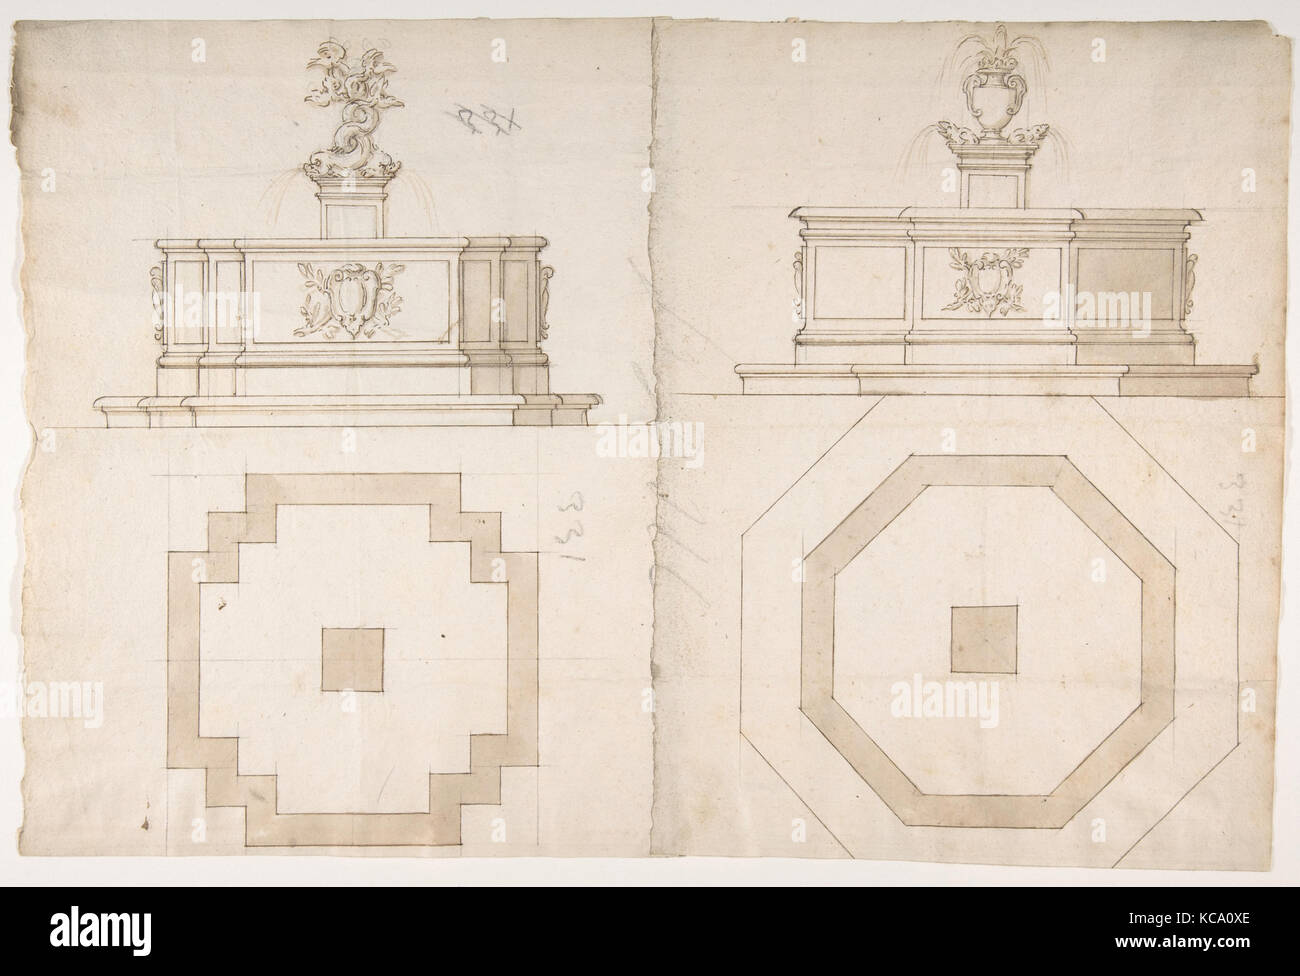 Les plans et les élévations de deux fontaines, anonyme, le français, 16e siècle Banque D'Images